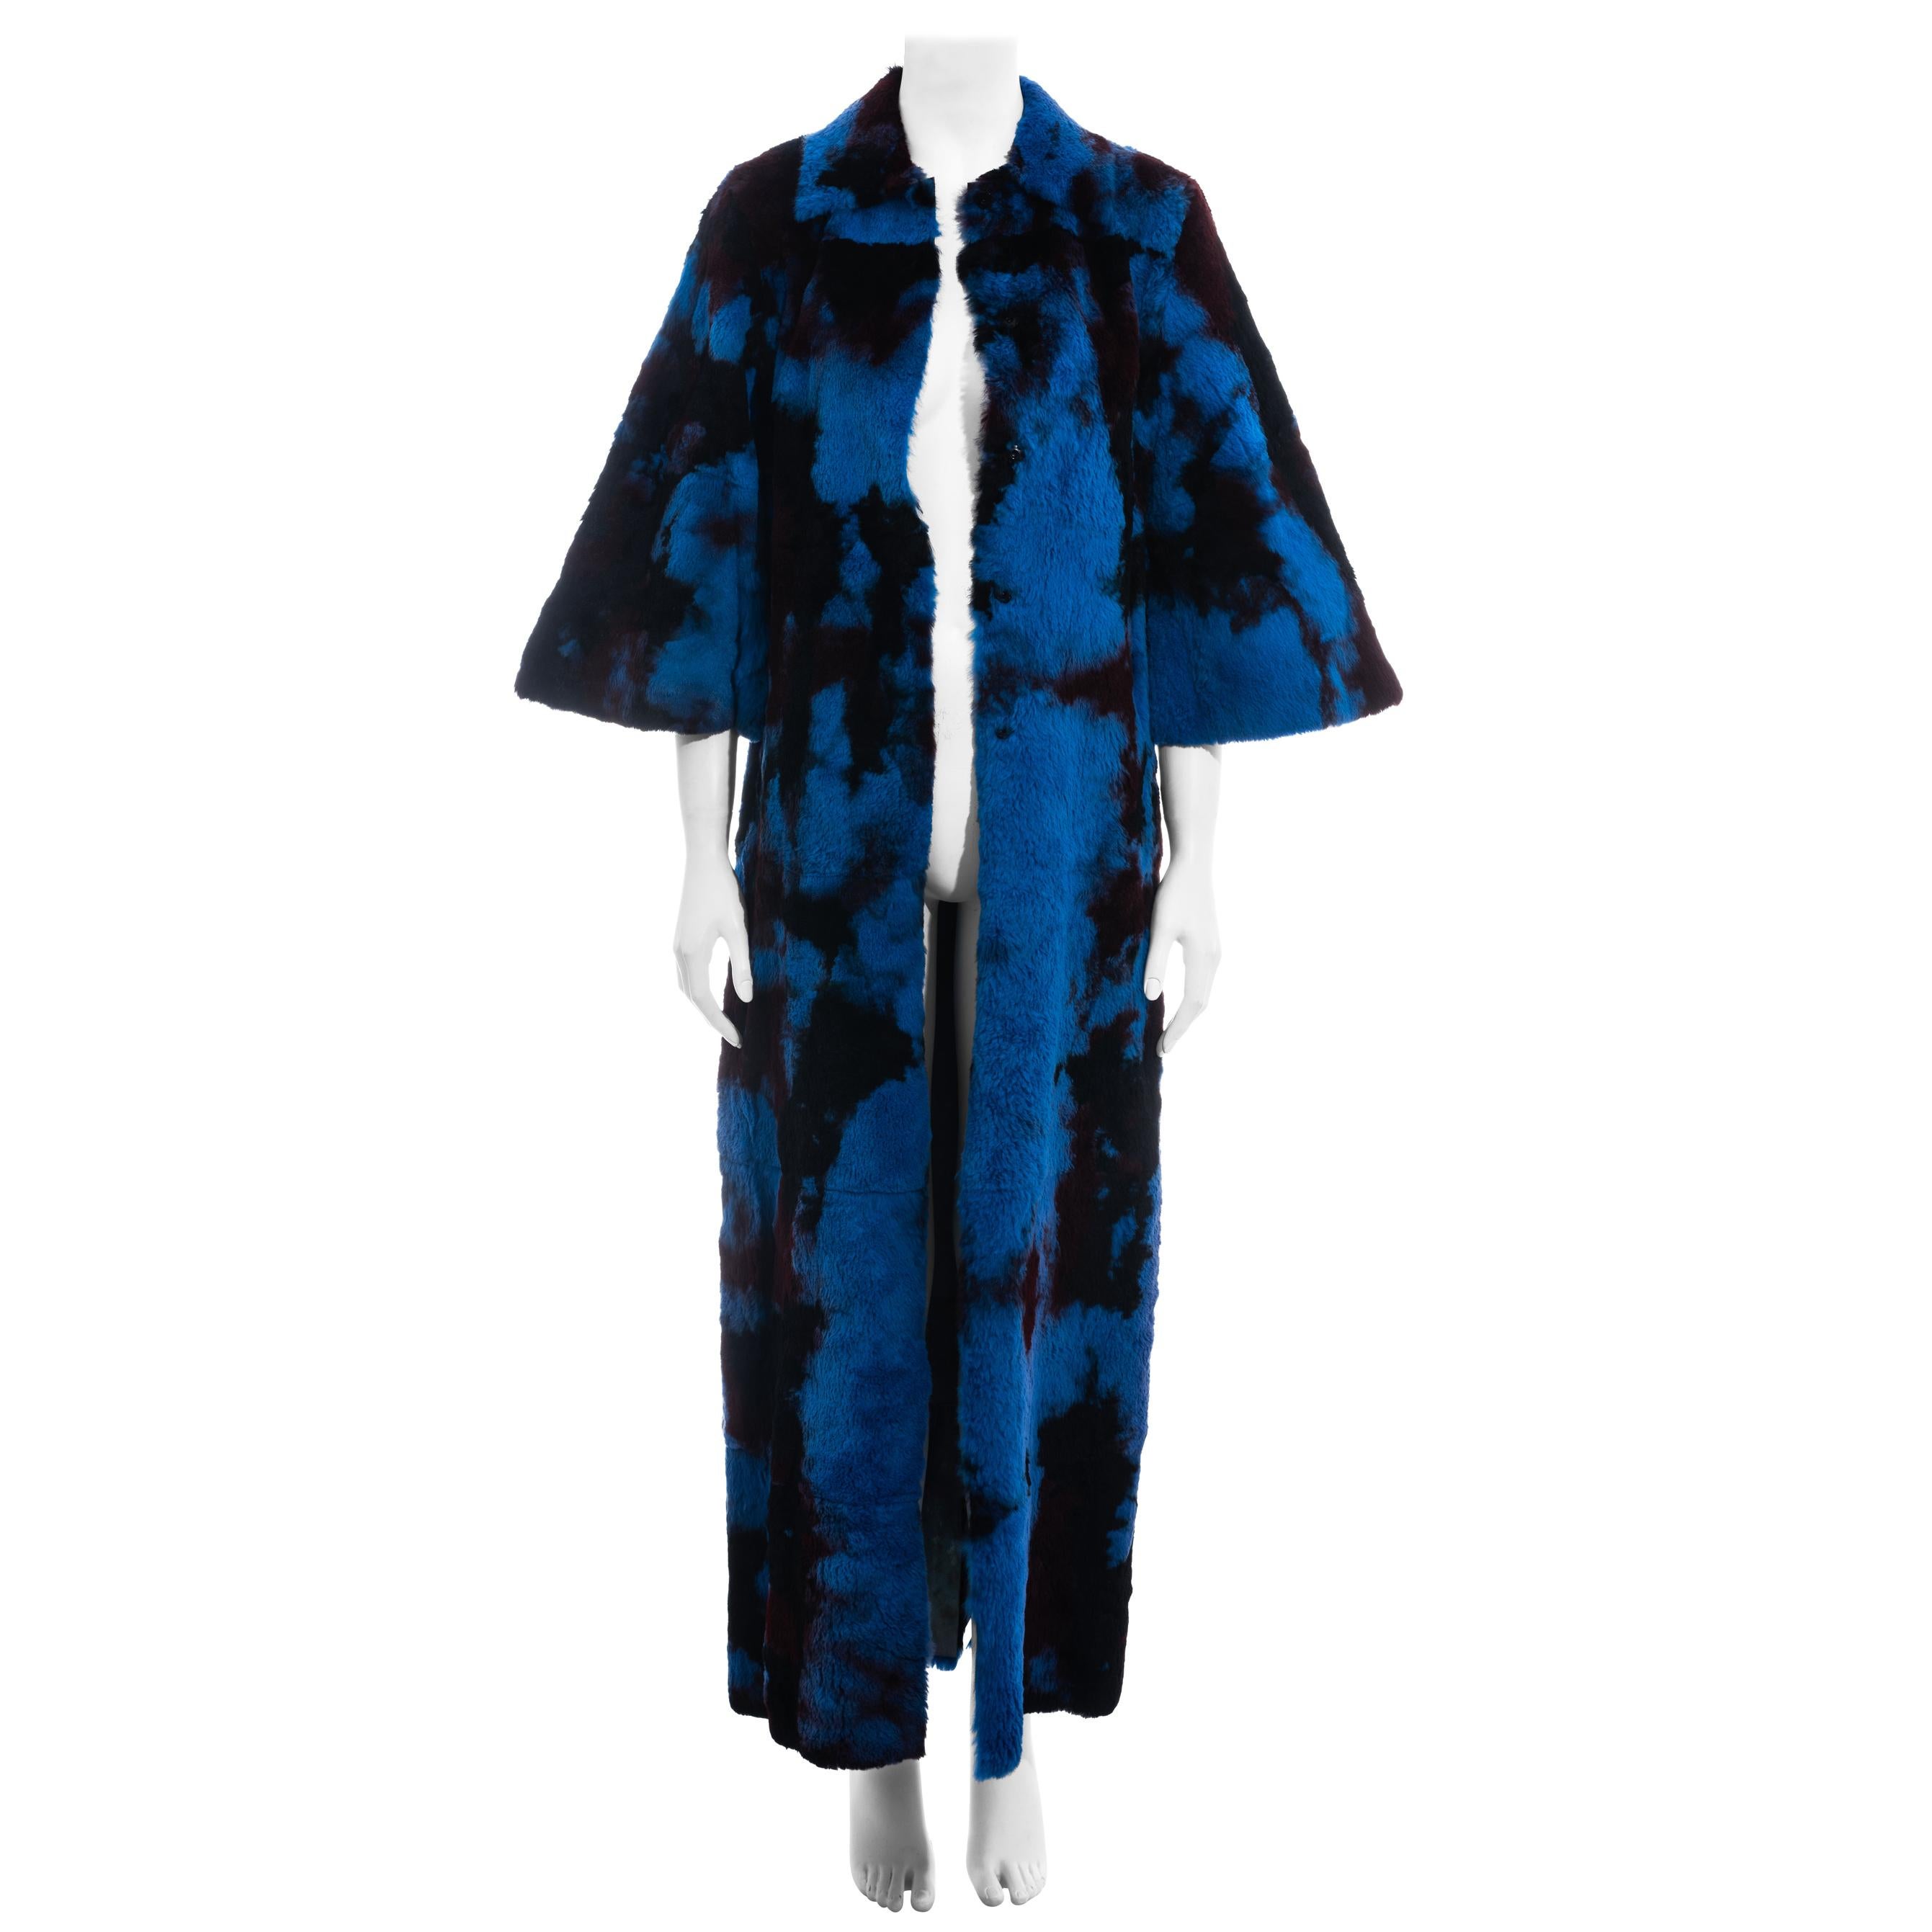 Dolce & Gabbana - Manteau long en fourrure bleu et noir teintée par cravate, automne-hiver 1999